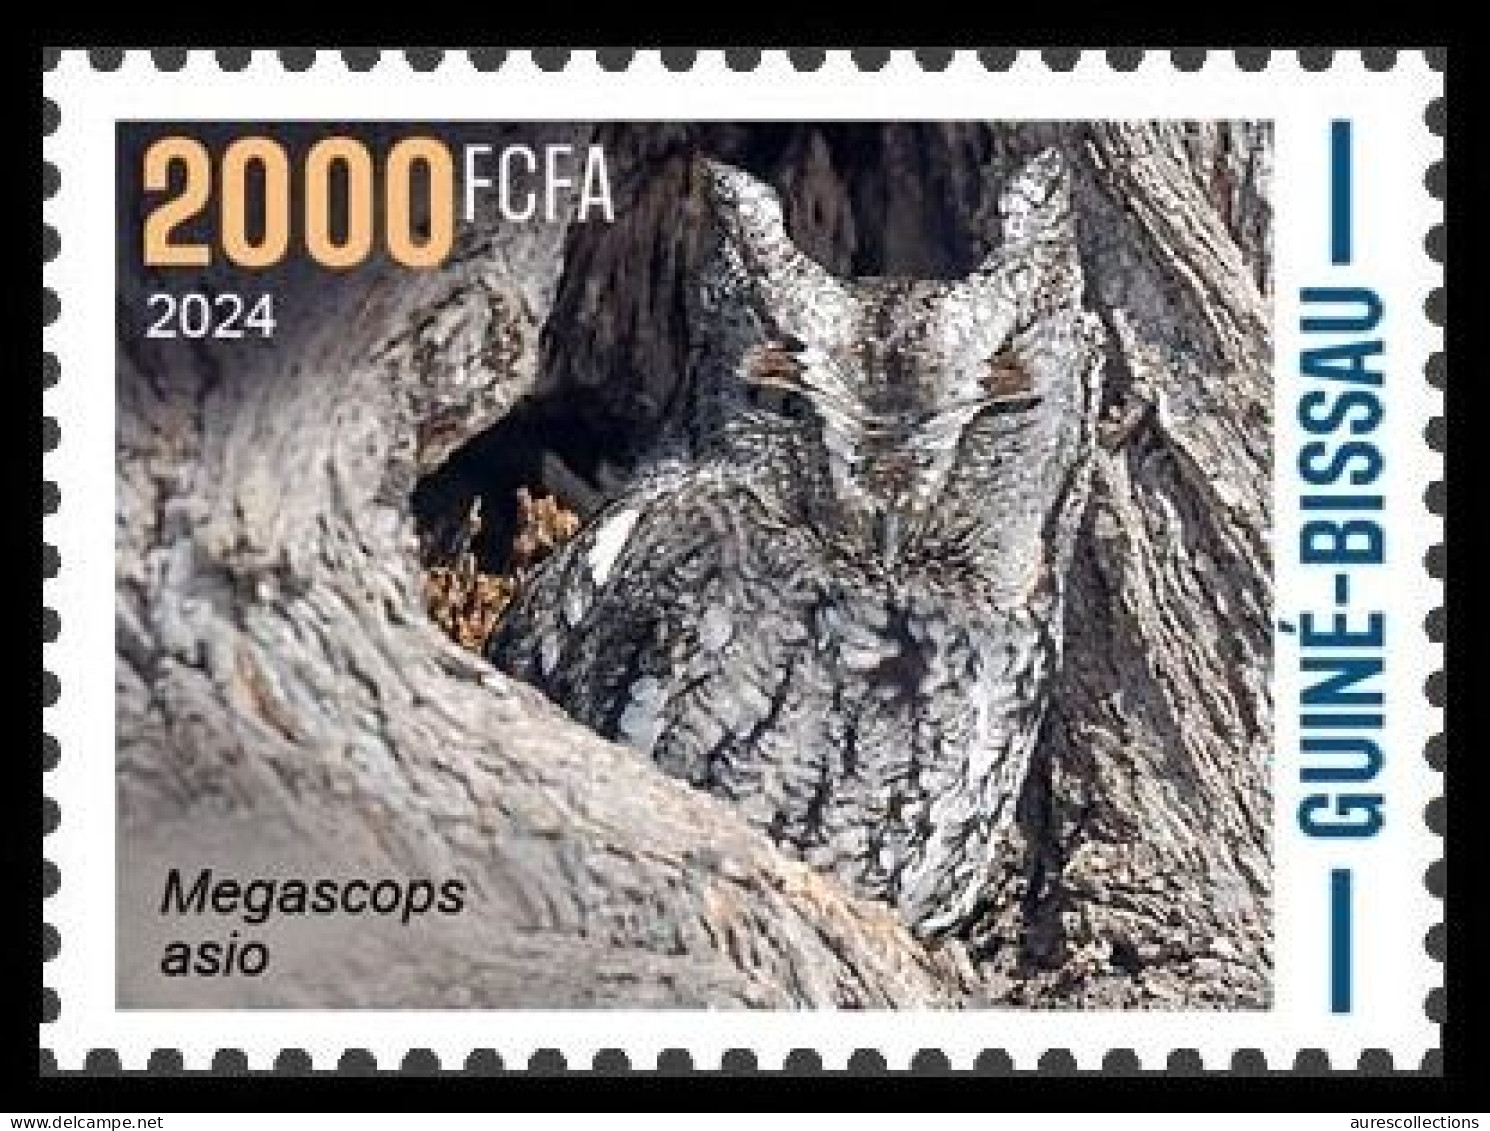 GUINEA BISSAU 2024 STAMP 1V - CAMOUFLAGE - OWLS OWL HIBOUX HIBOU BIRDS OISEAUX - MNH - Owls